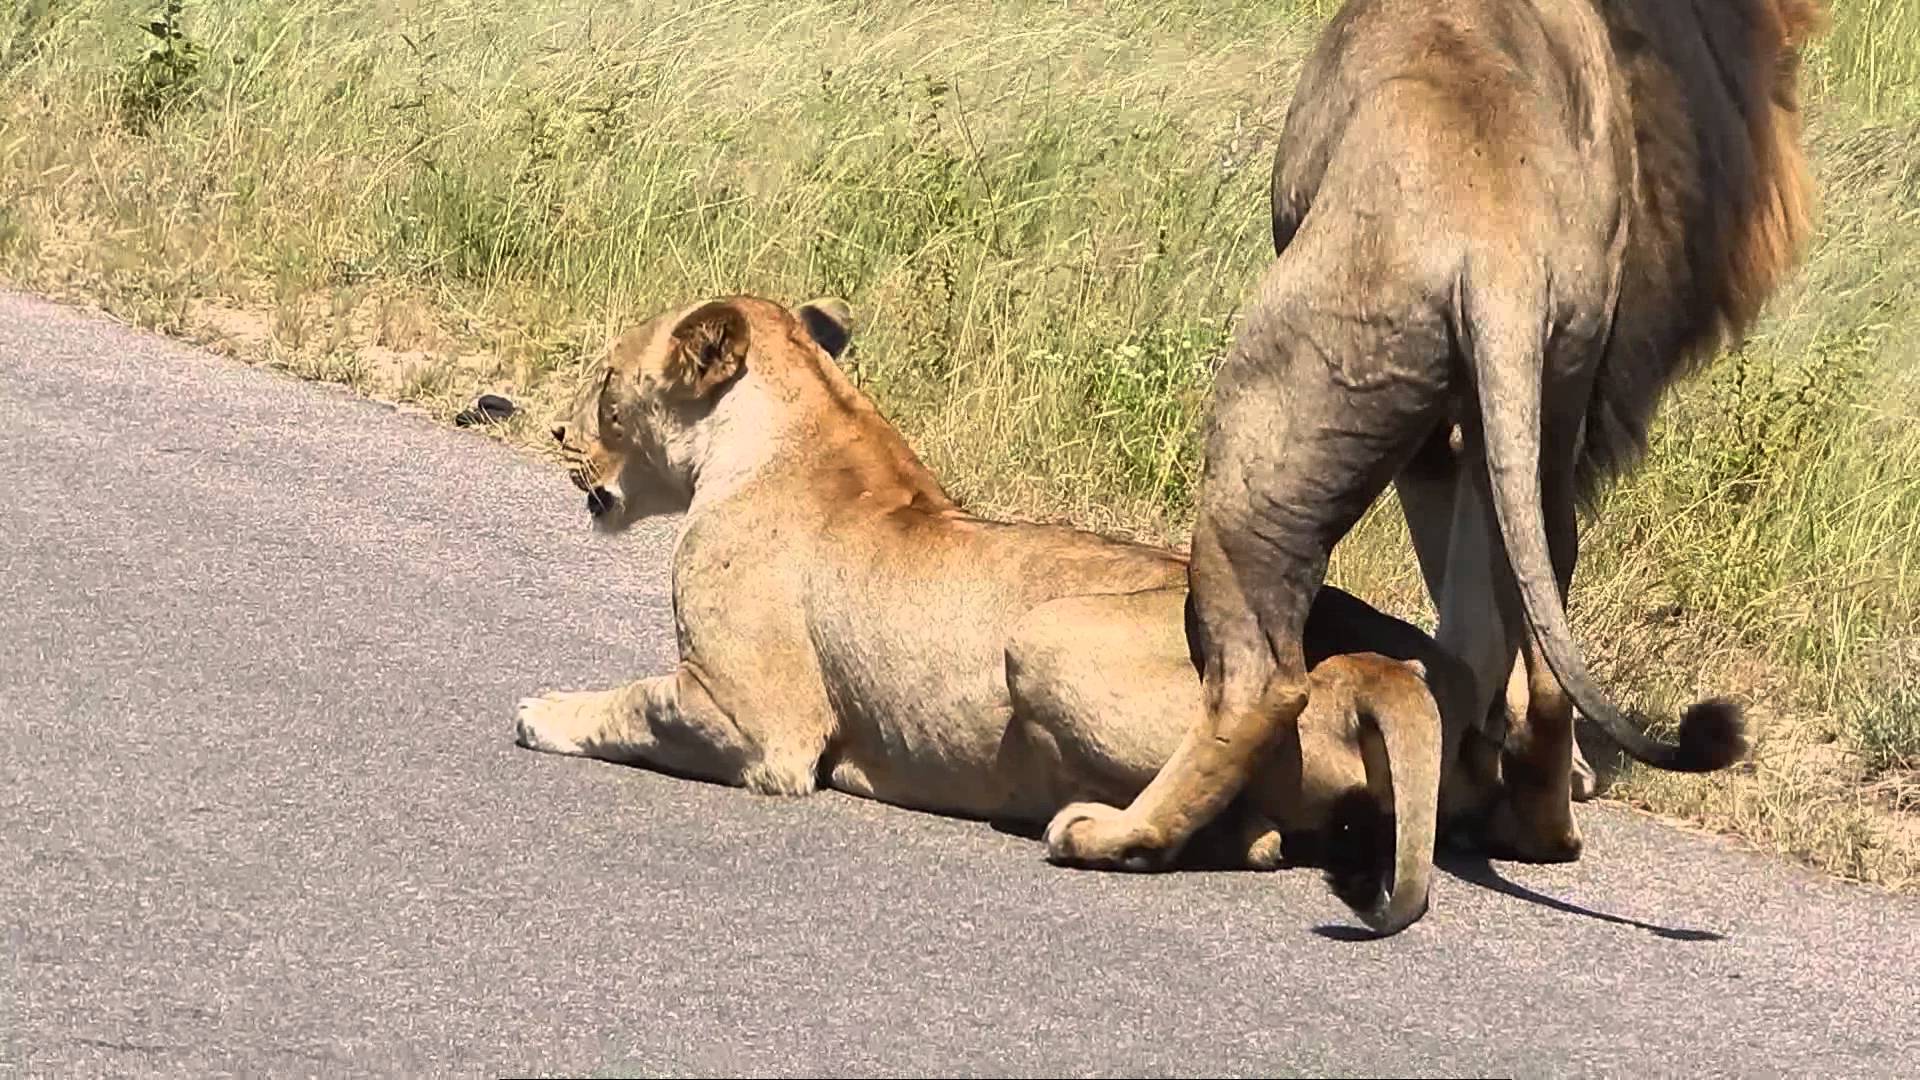 kruger national park lion porn youtube